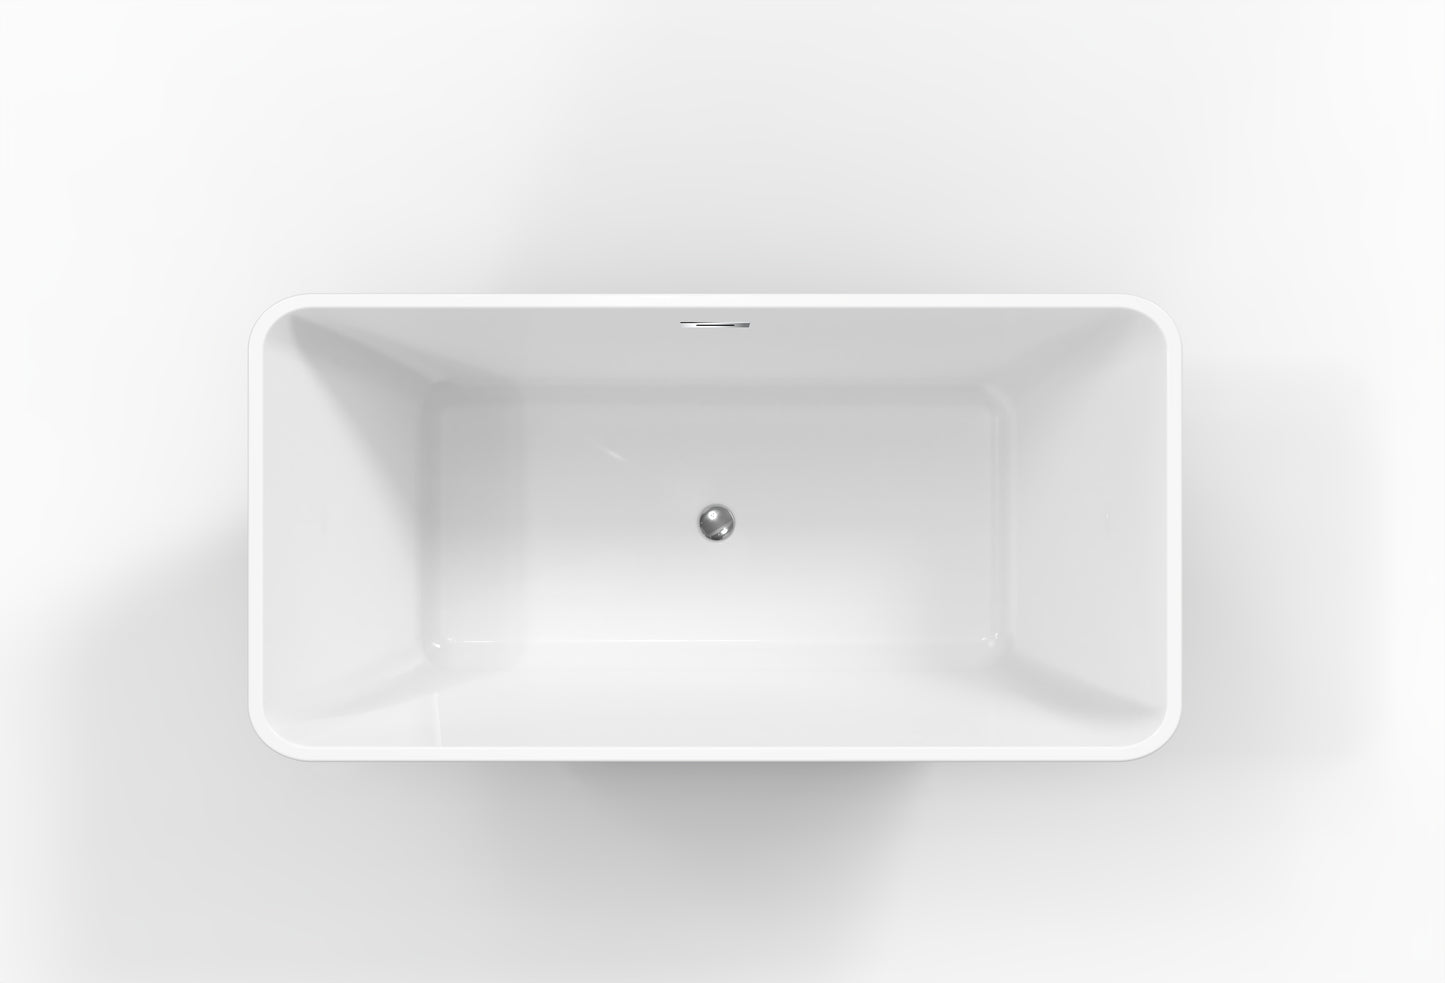 BAUHAUS AURA Freestanding Bath Tub - White - 1600 x 750 x 580mm